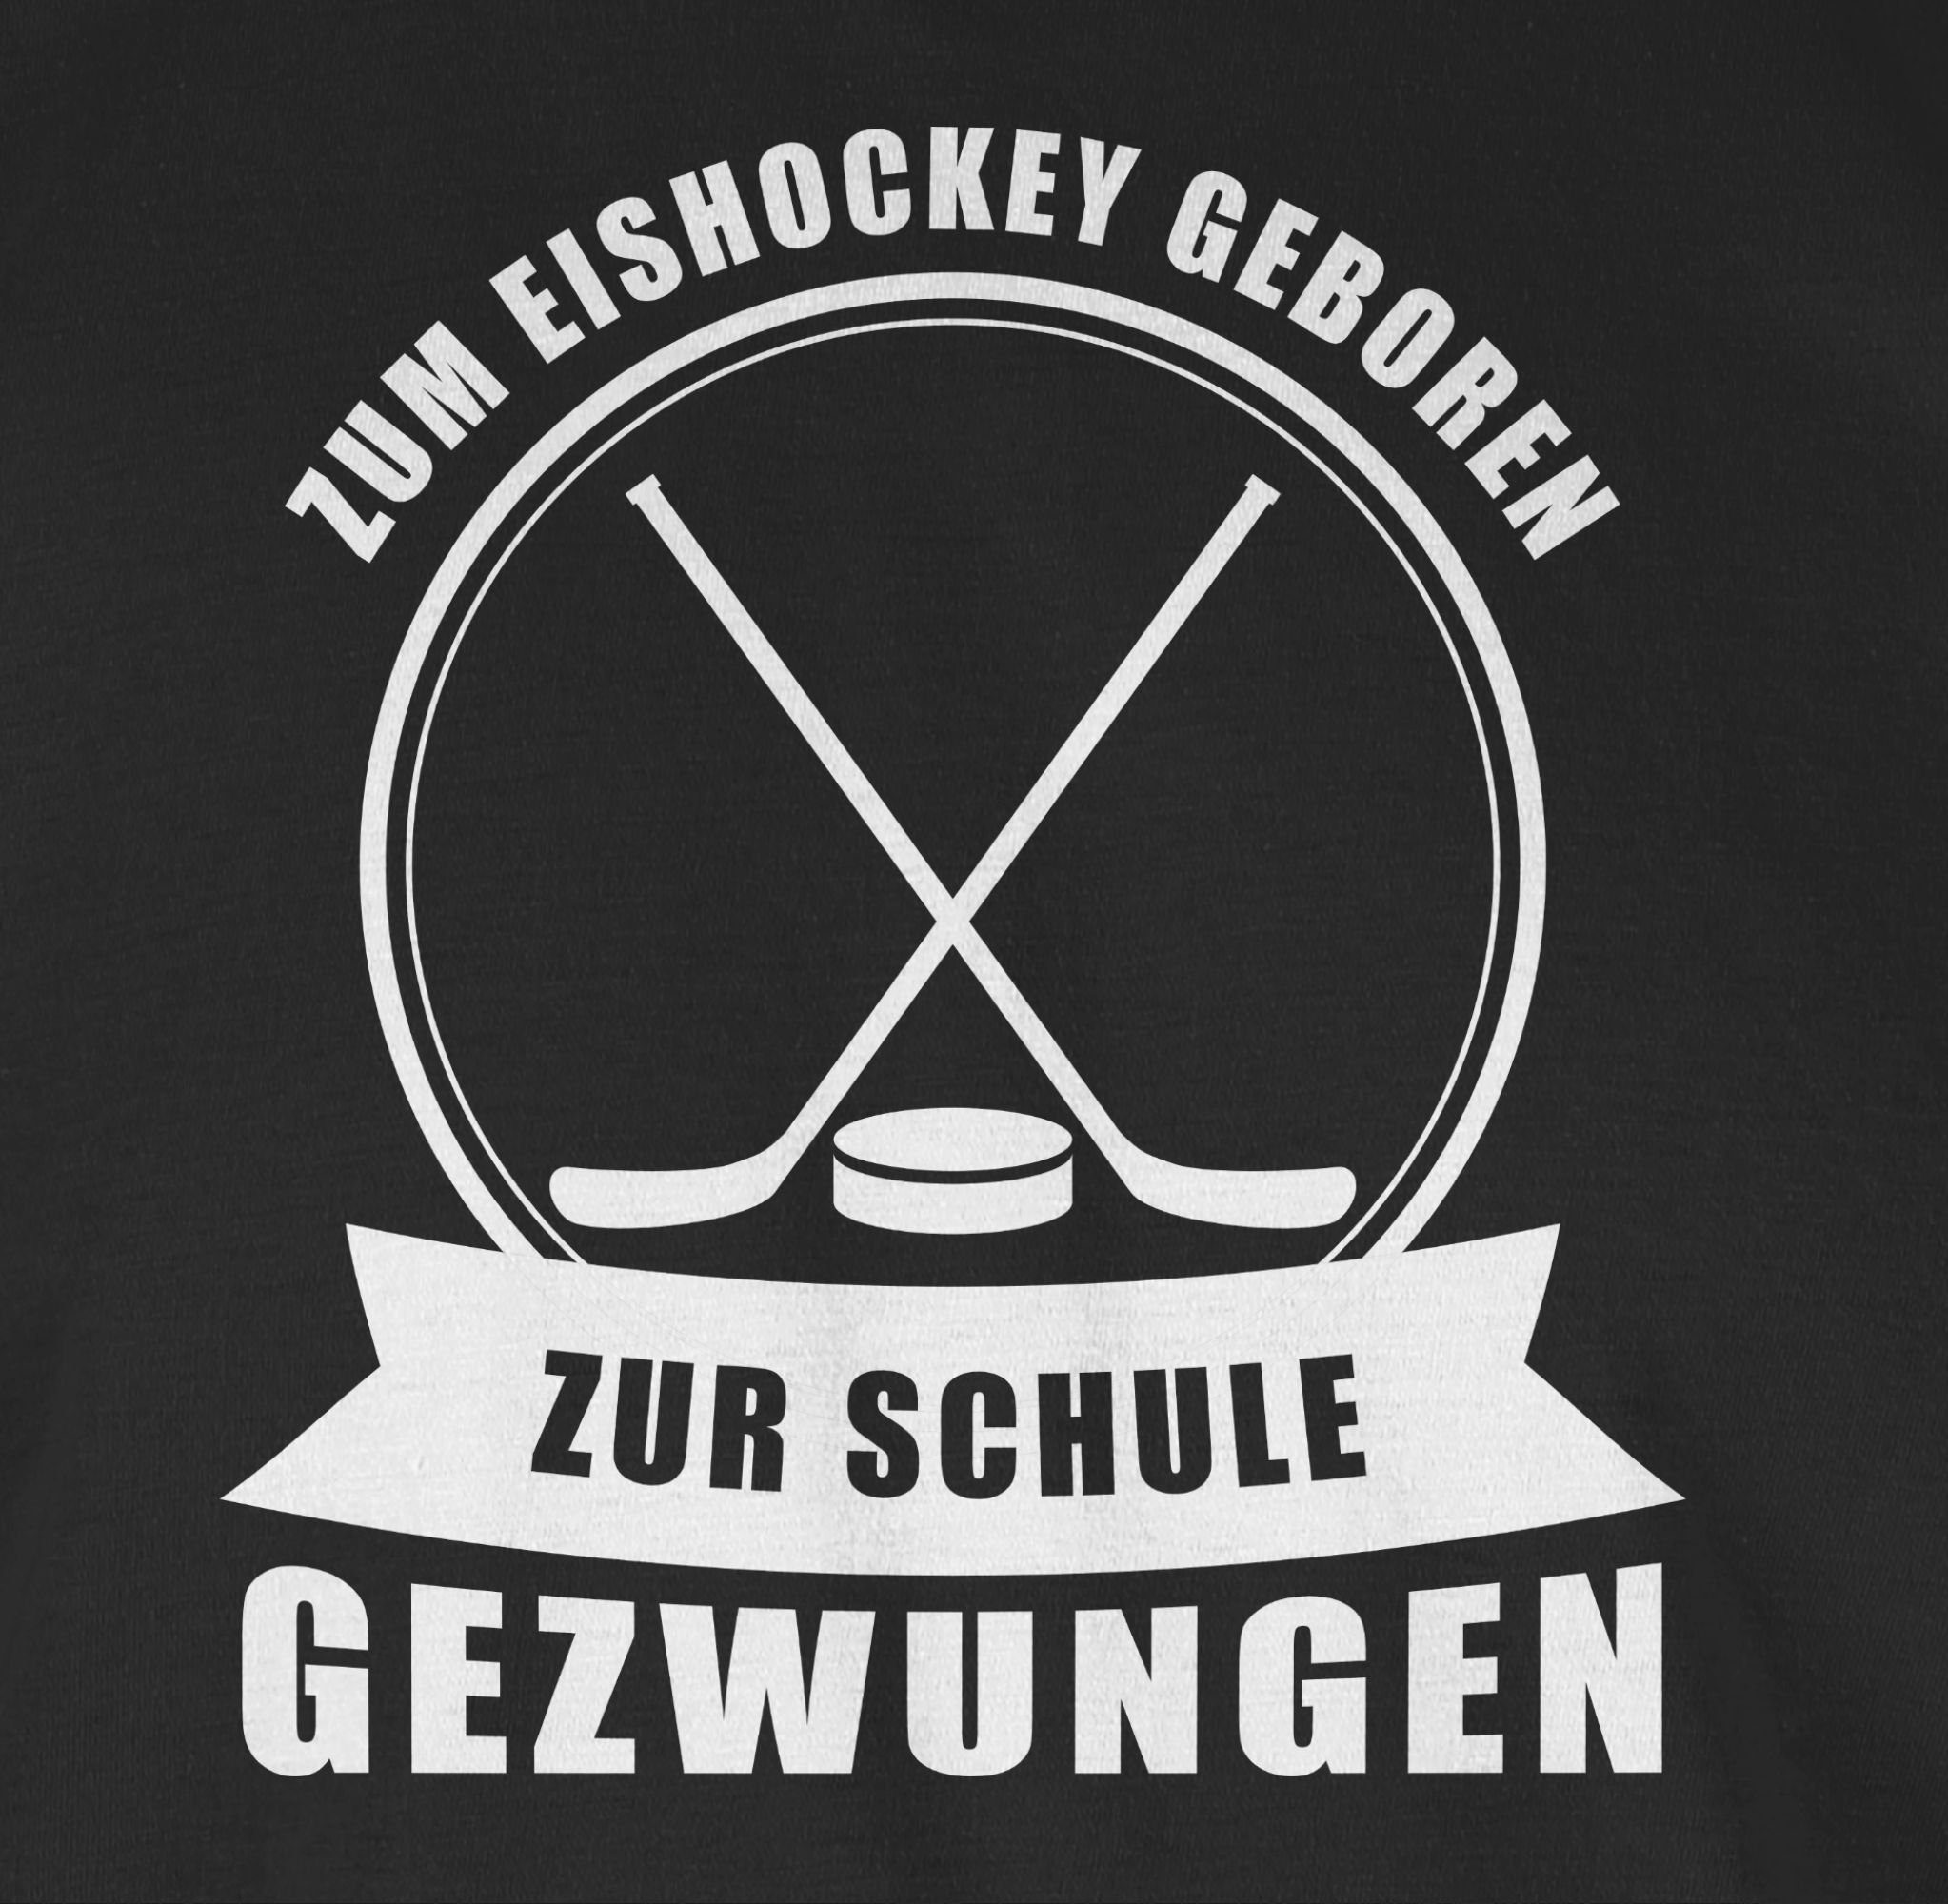 Shirtracer T-Shirt Zum Eishockey geboren. gezwungen Schwarz Zur 1 Eishockey Schule